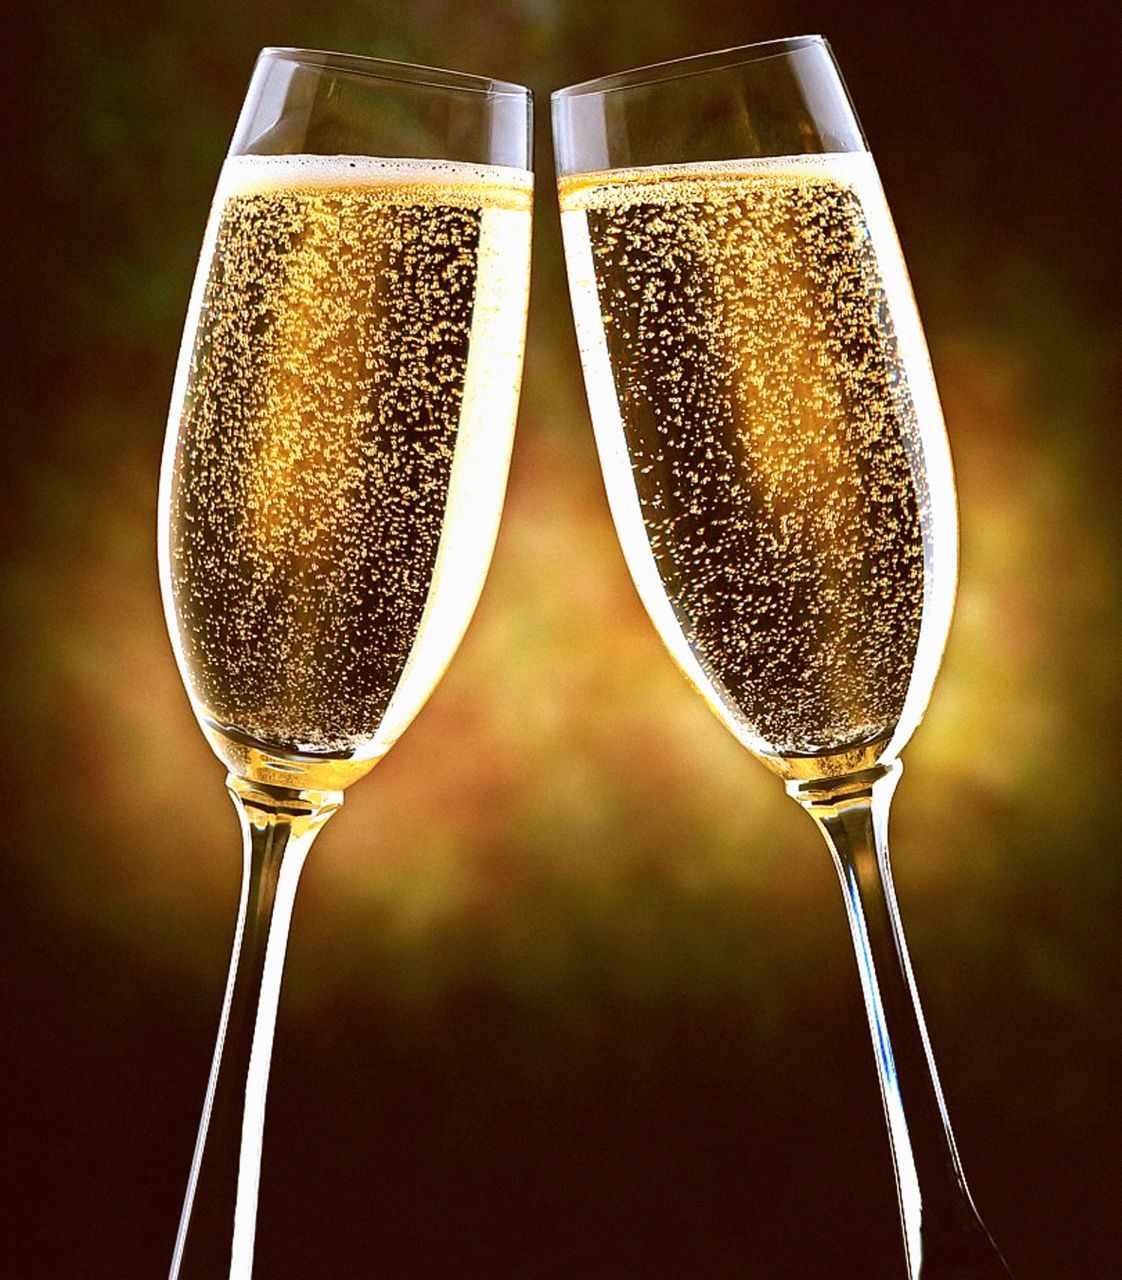 Alkohole i szampan - pięć rzeczy, które powinieneś o nim wiedzieć